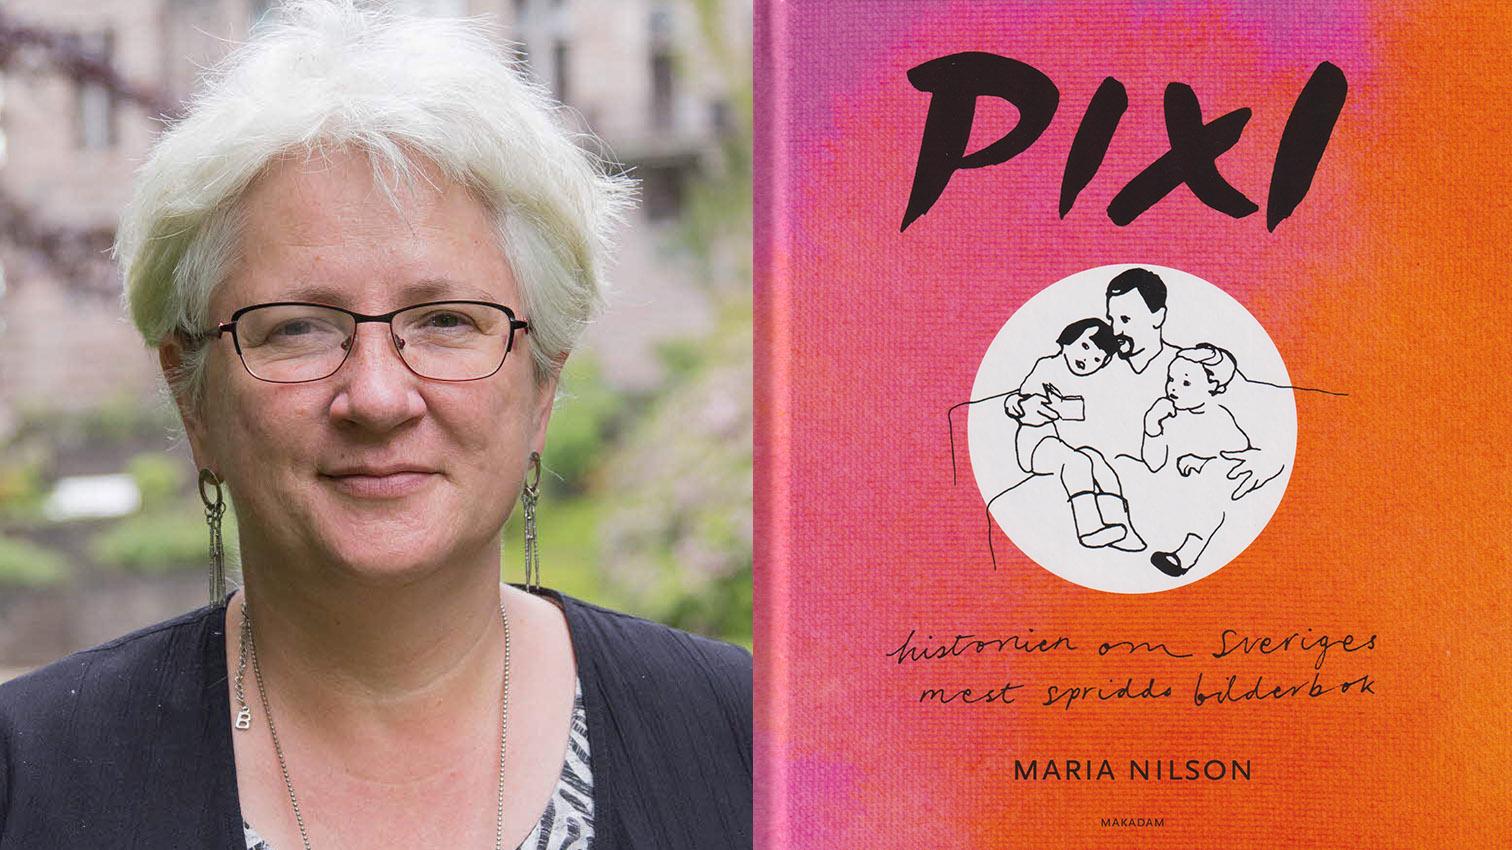 Maria Nilson är docent vid Linnéuniversitetet i Växjö och har nyligen utkommit med ”Pixi – Historien om Sveriges mest spridda bilderbok”.